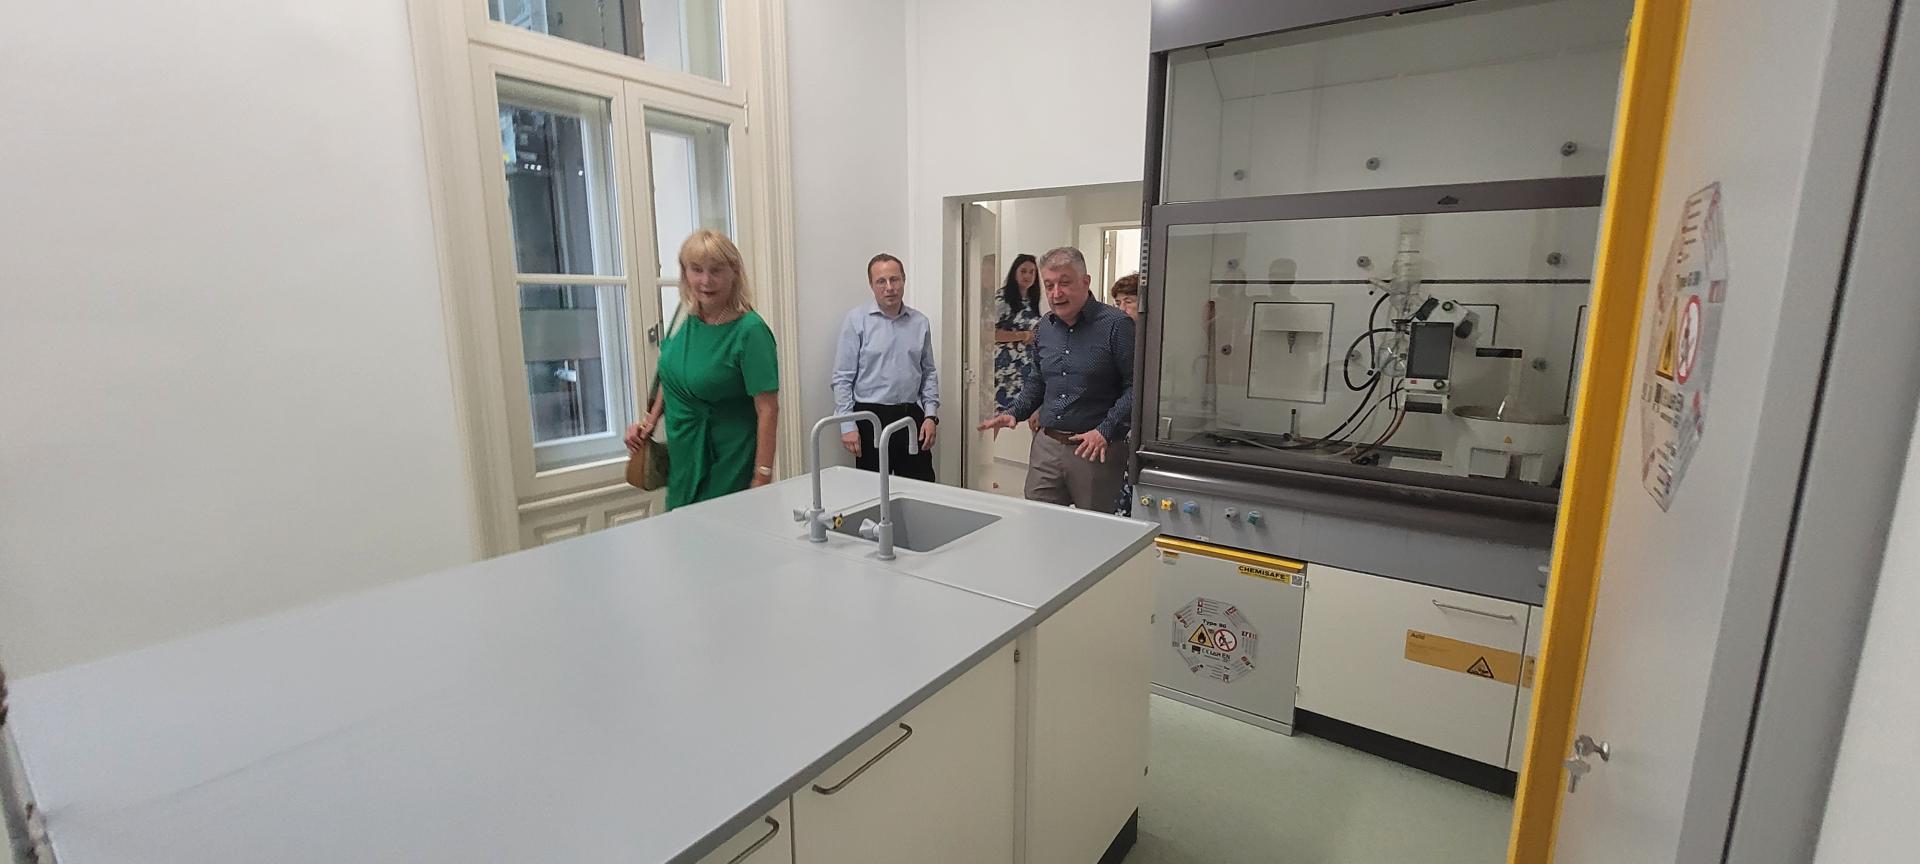 UMF Cluj a inaugurat noul Centru de Cercetare privind Dezvoltarea Medicamentului. Investiție de peste 30 de milioane de lei